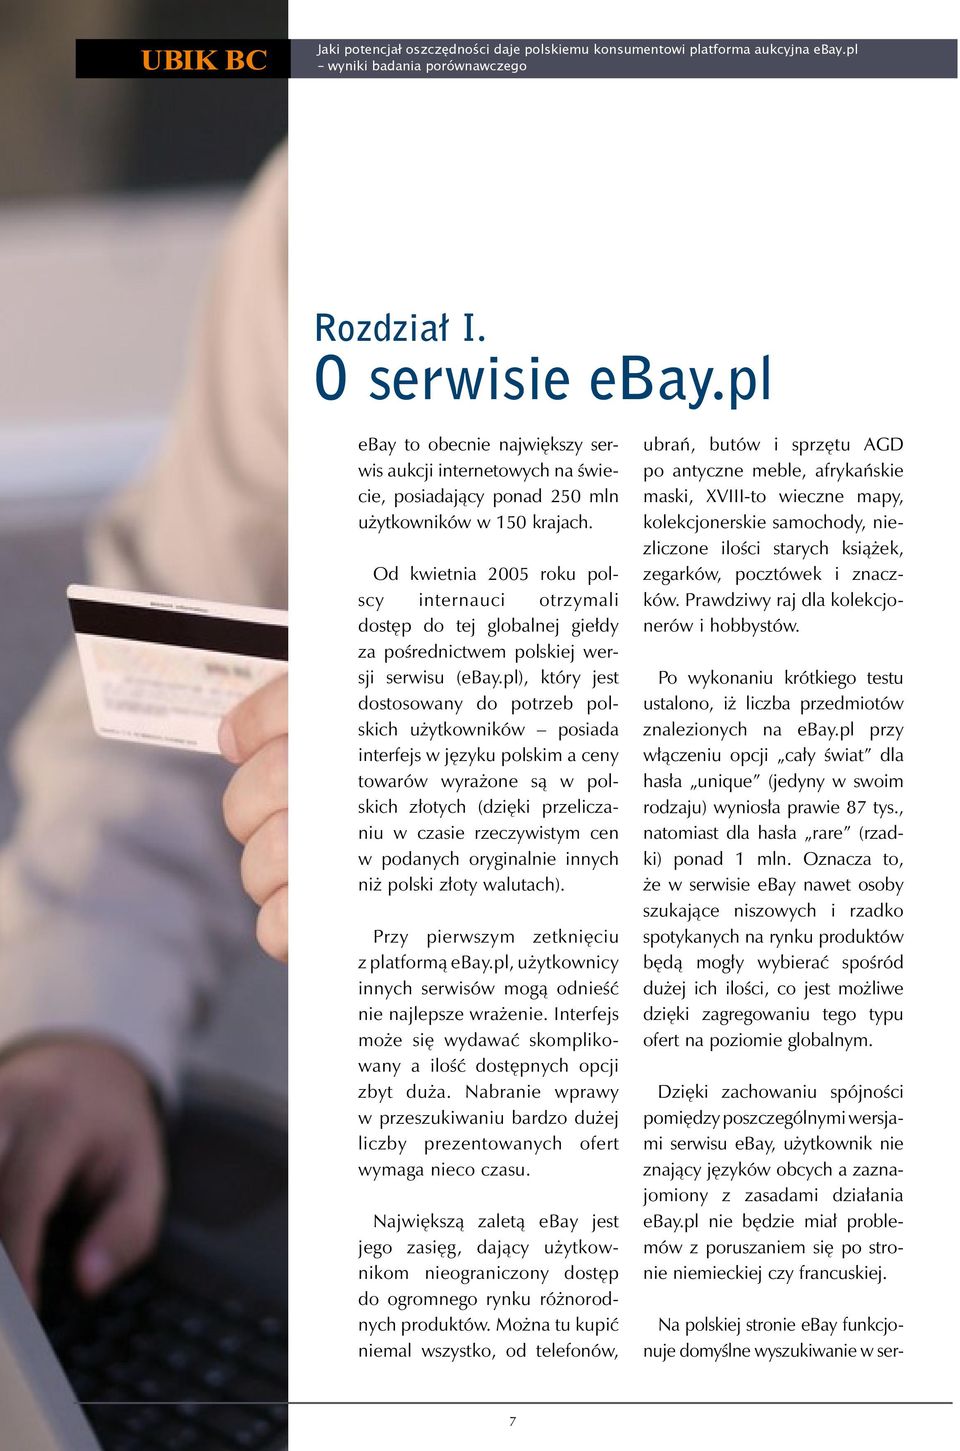 Od kwietnia 2005 roku polscy internauci otrzymali dostęp do tej globalnej giełdy za pośrednictwem polskiej wersji serwisu (ebay.